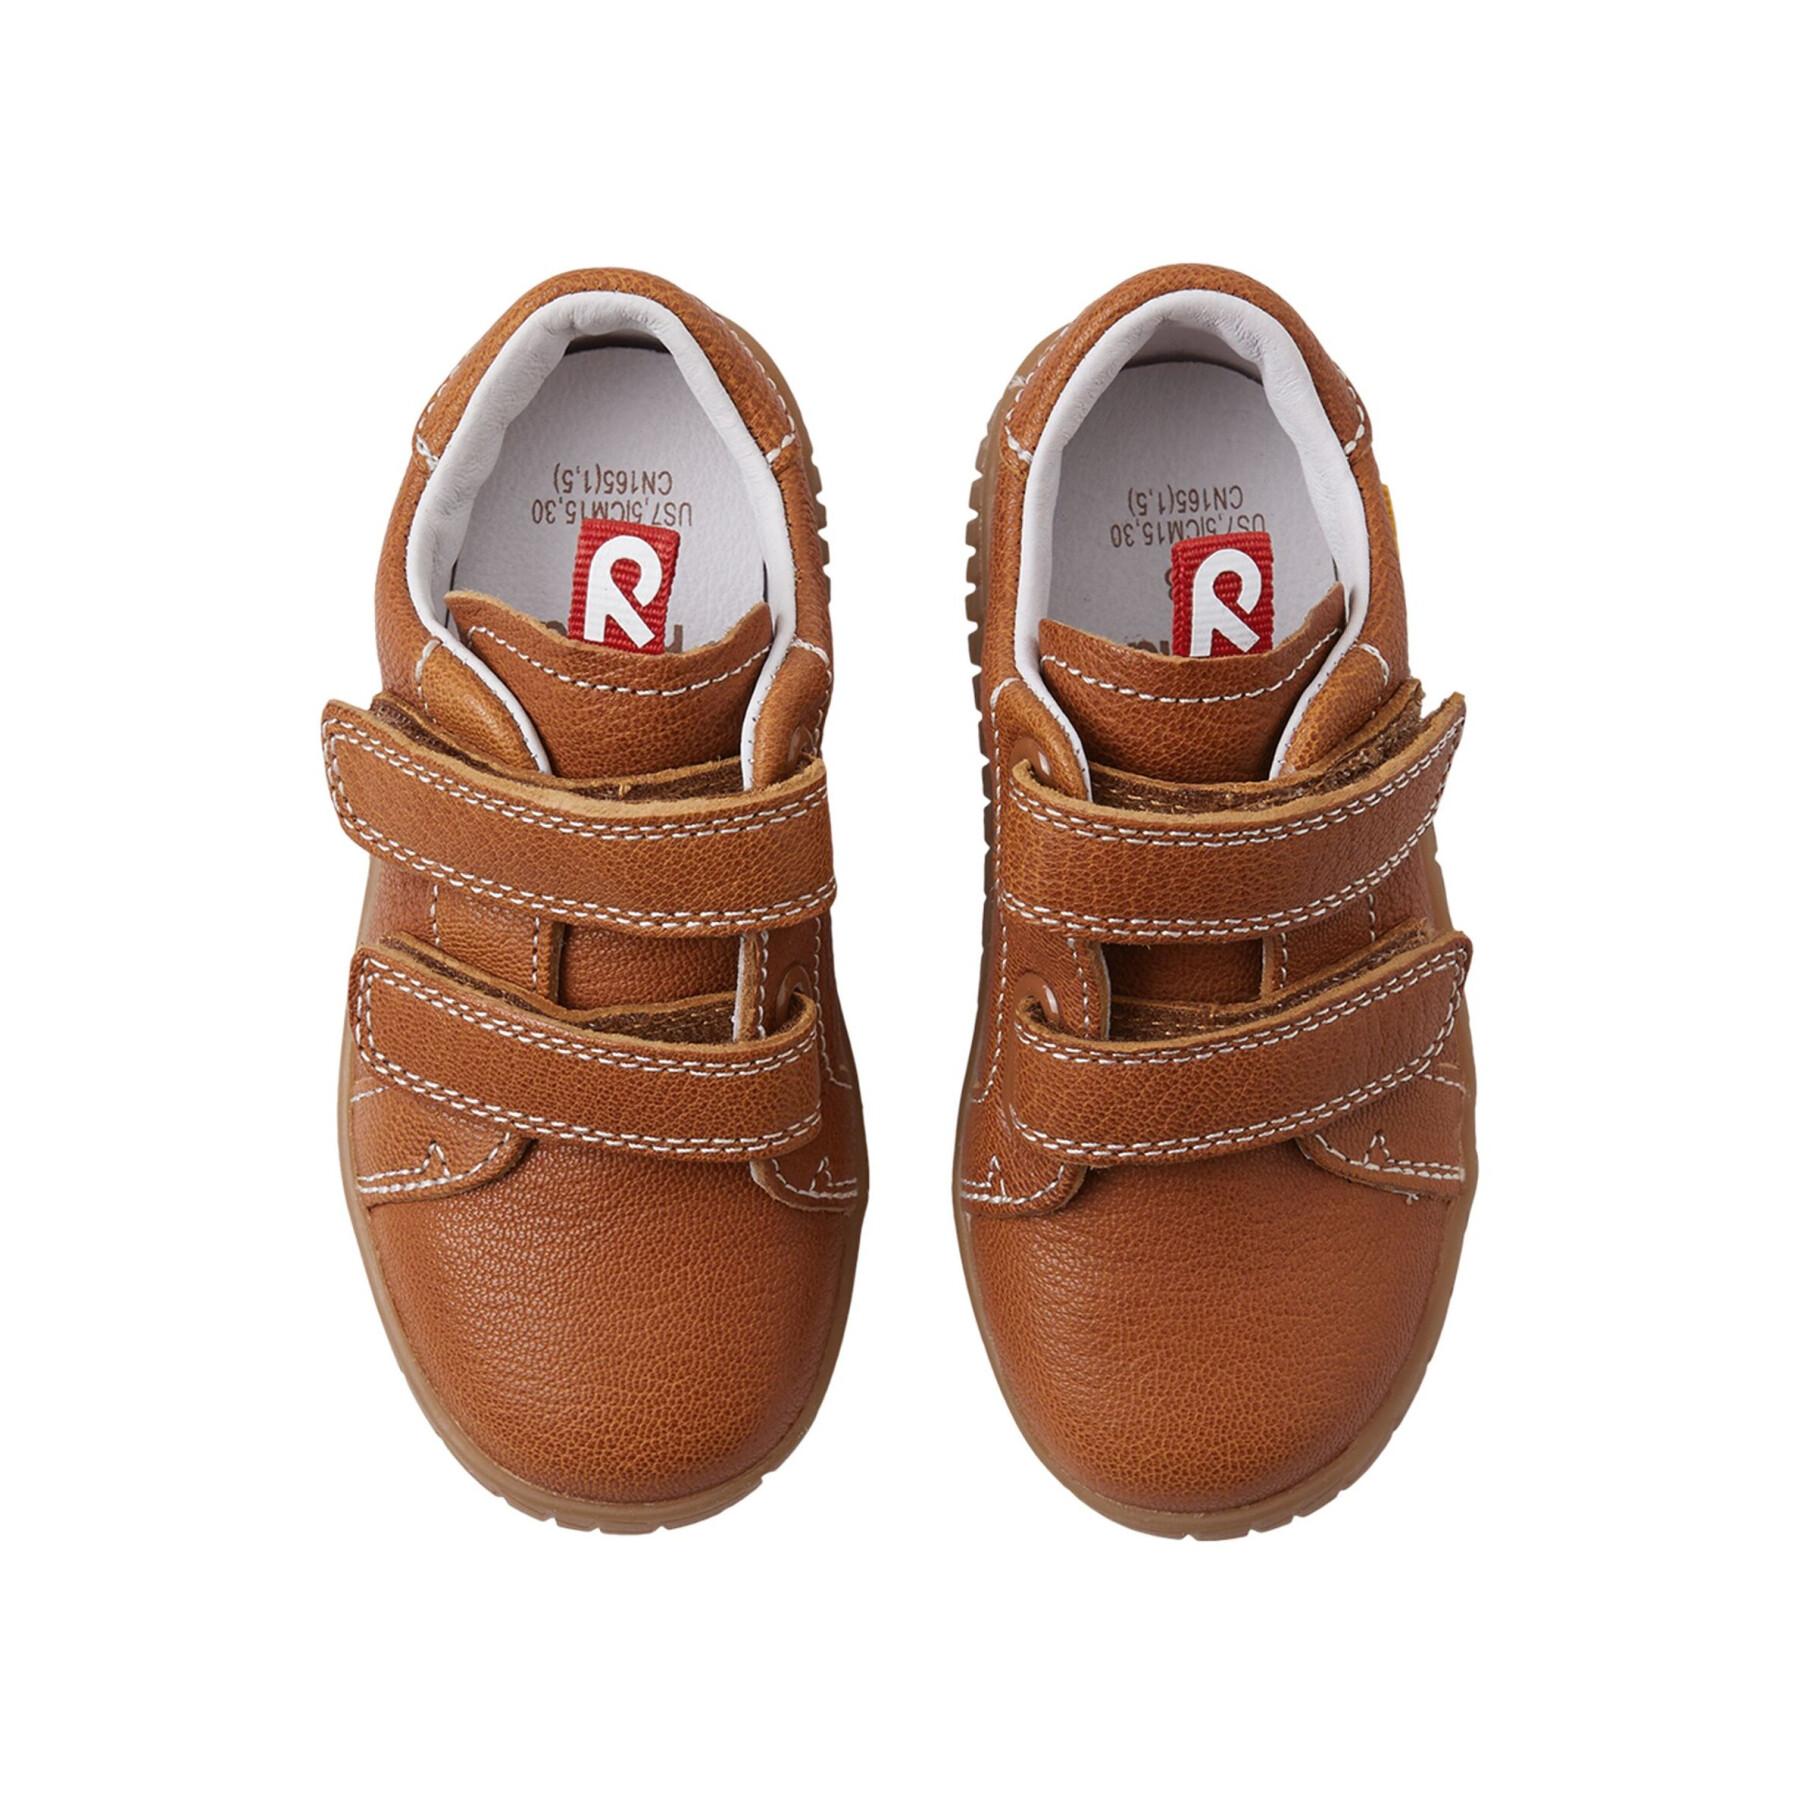 Baby sneakers Reima Kummi